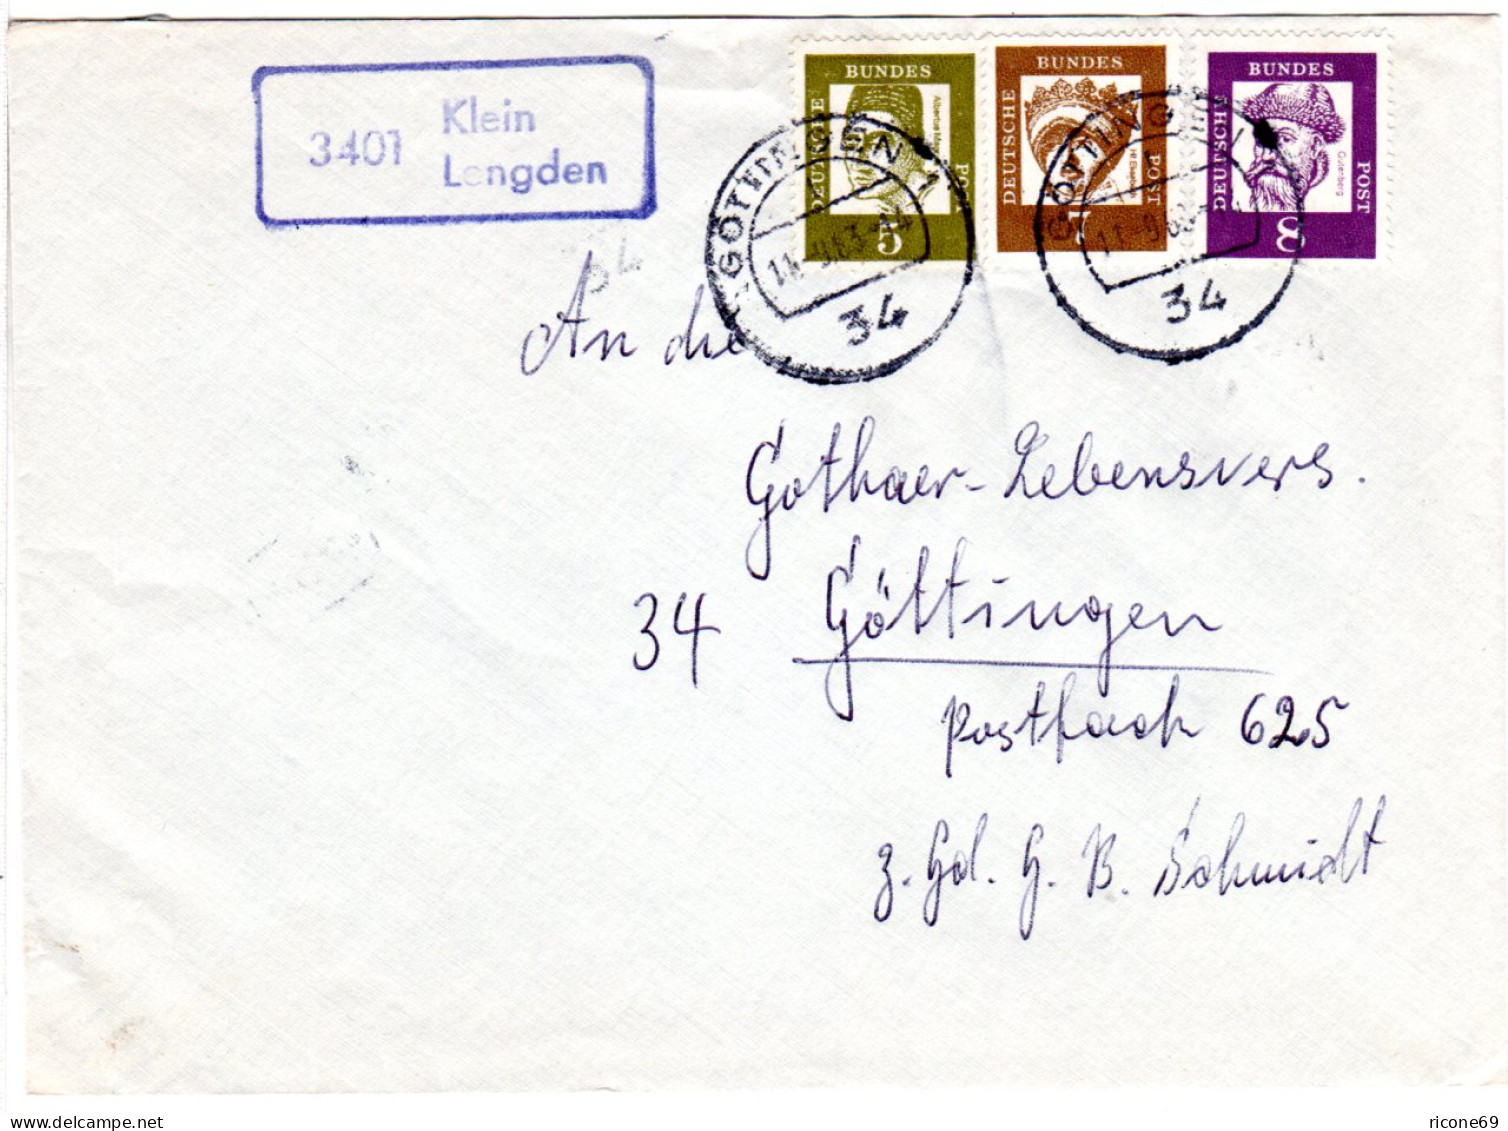 BRD 1963, Landpoststpl. 3401 Klein Lengden Auf Brief M. 5+7+8 Pf Gest. Göttingen - Briefe U. Dokumente